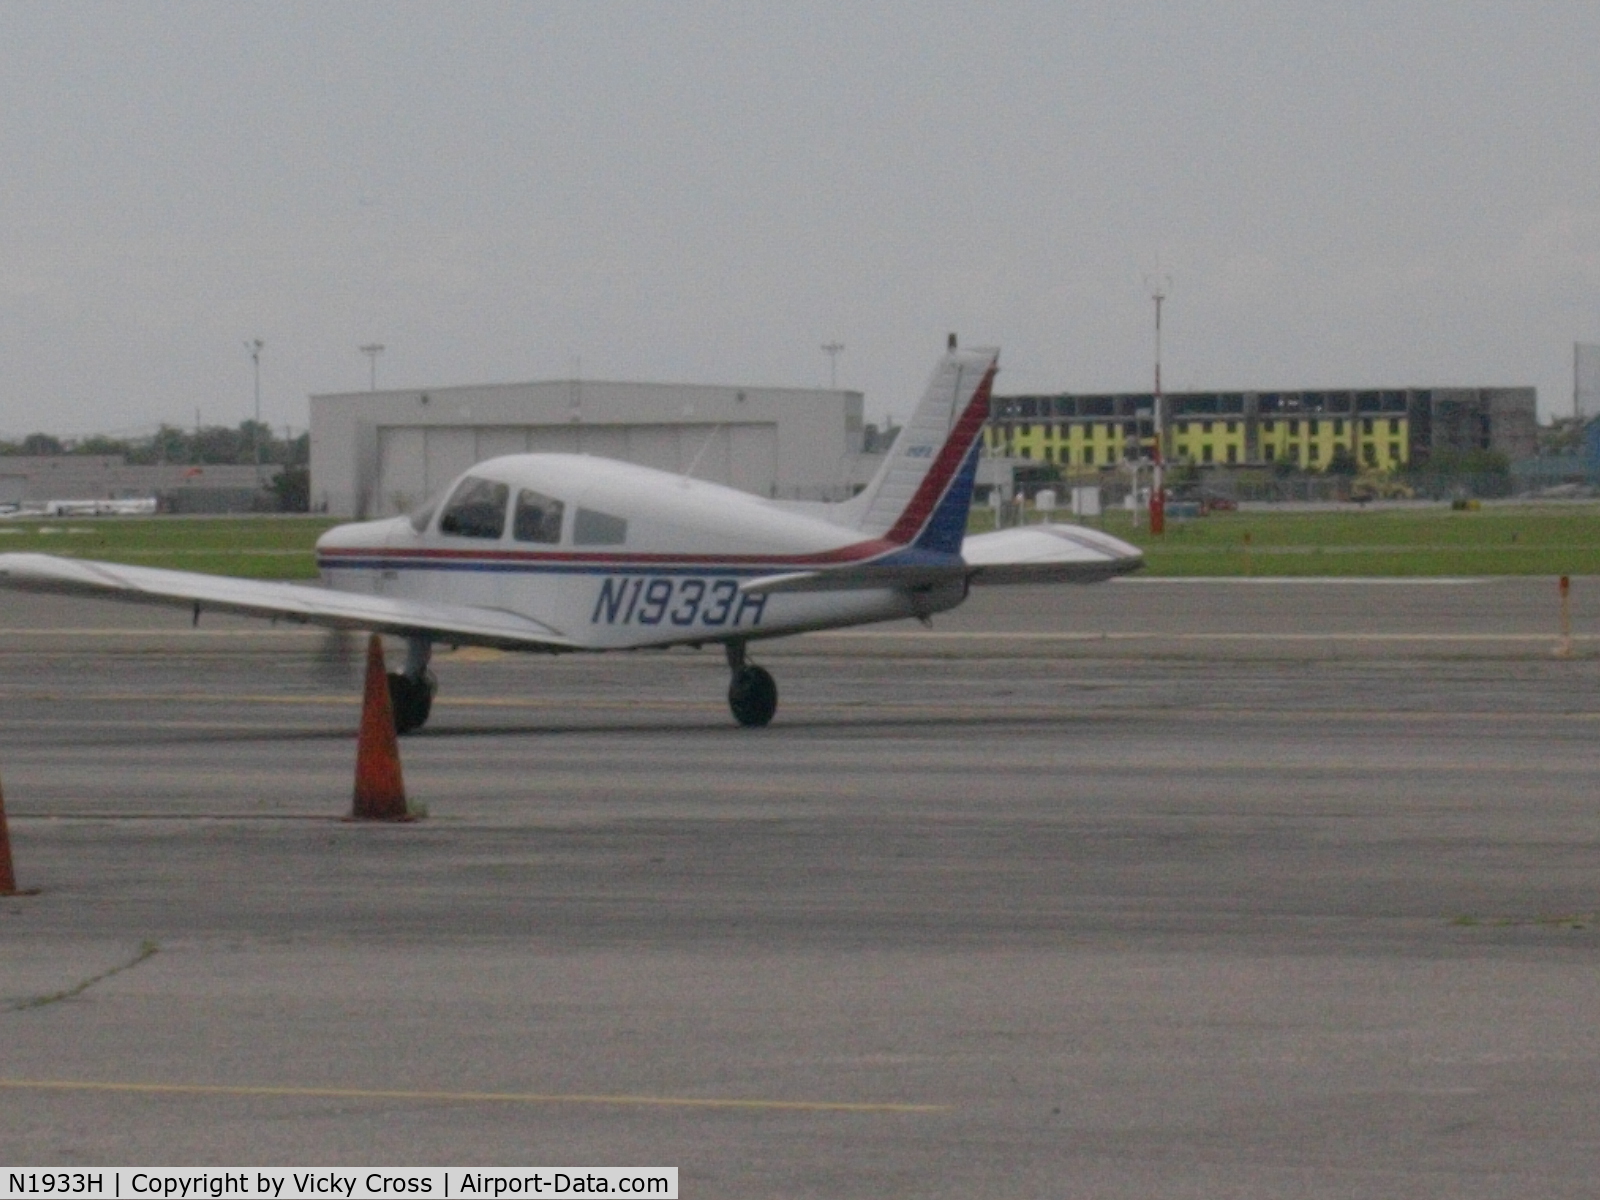 N1933H, 1977 Piper PA-28-140 Cherokee C/N 28-7725170, Me taking off